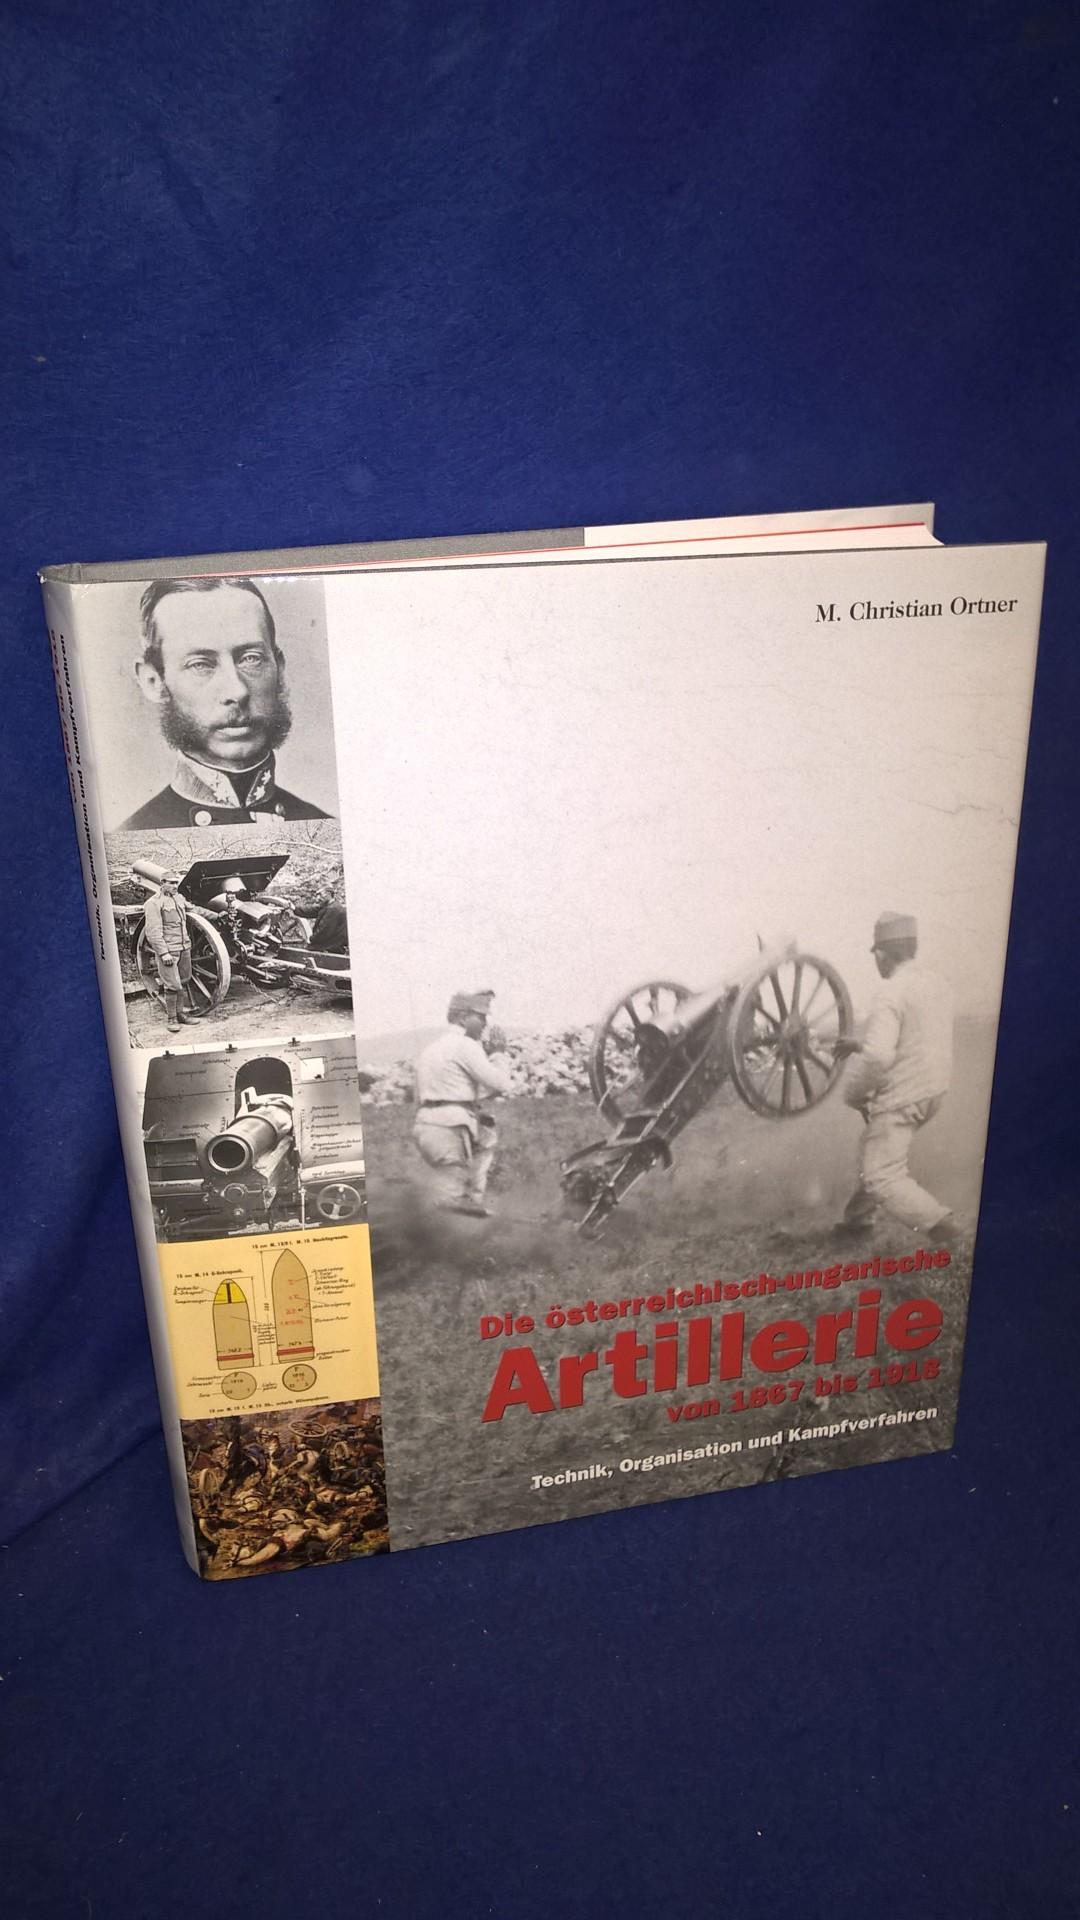  Die österreichisch-ungarische Artillerie von 1867 bis 1918: Technik, Organisation und Kampfverfahren.